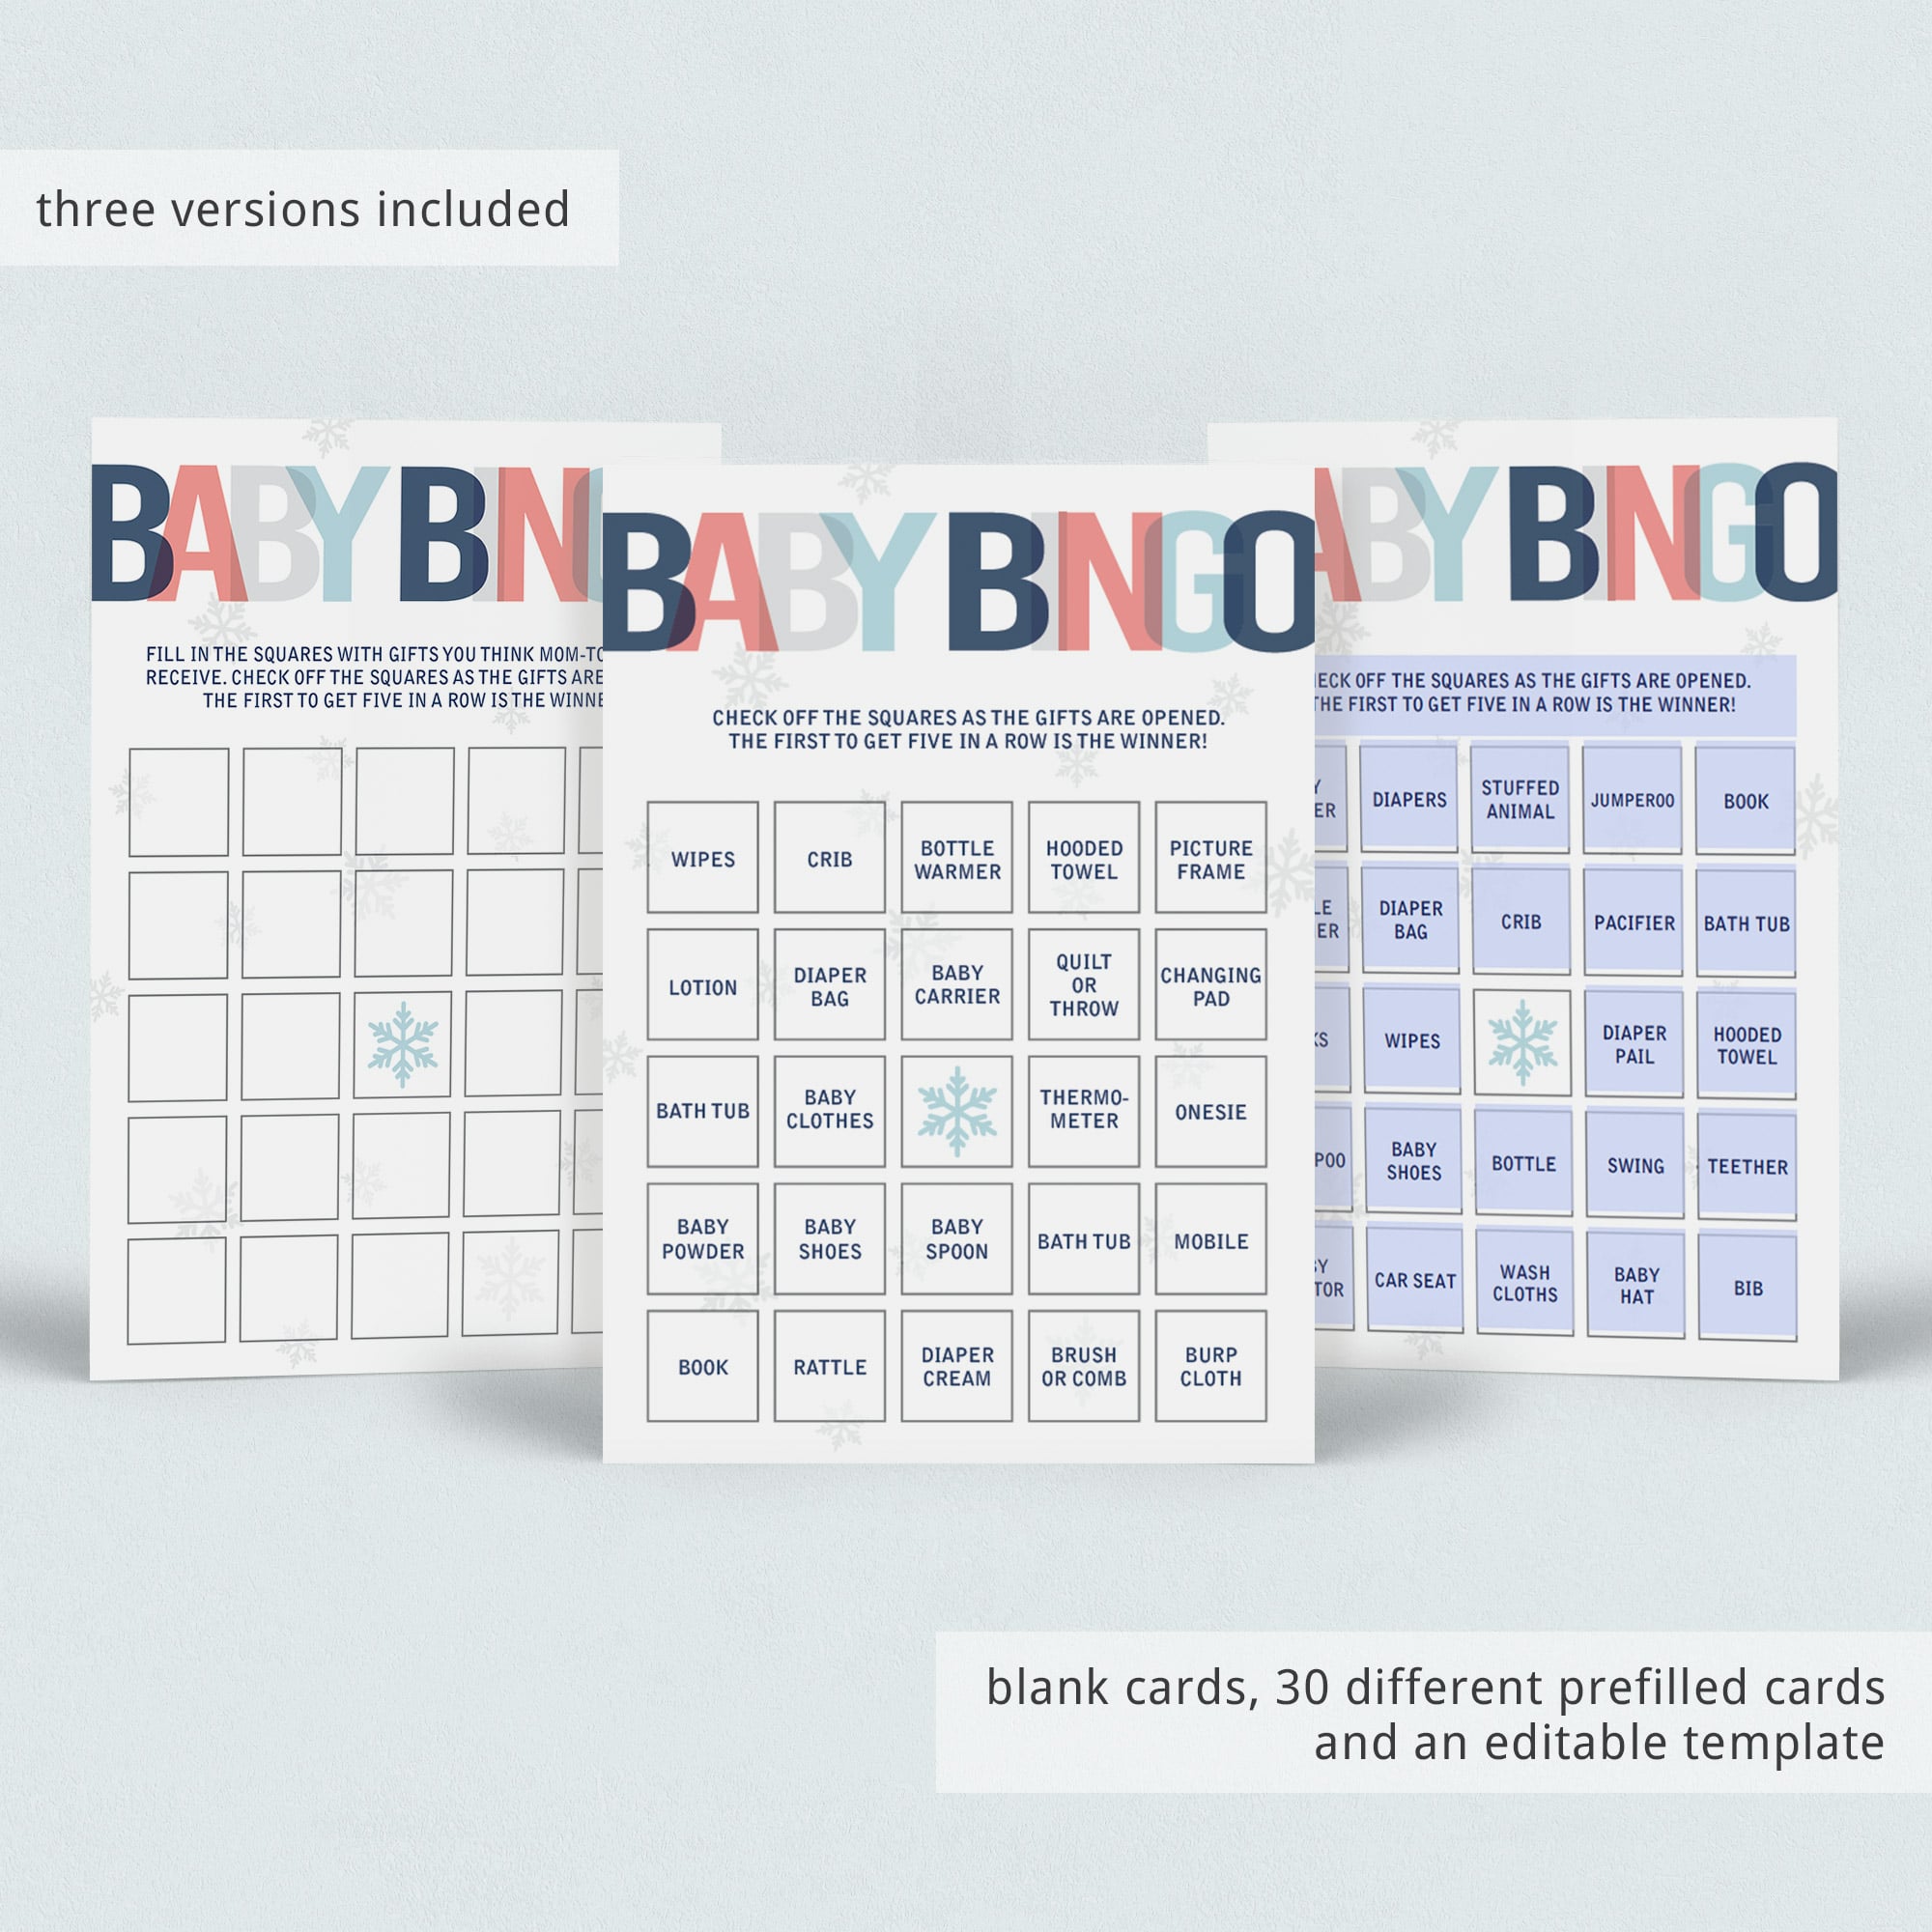 Baby shower bingo game for winter wonderland shower by LittleSizzle